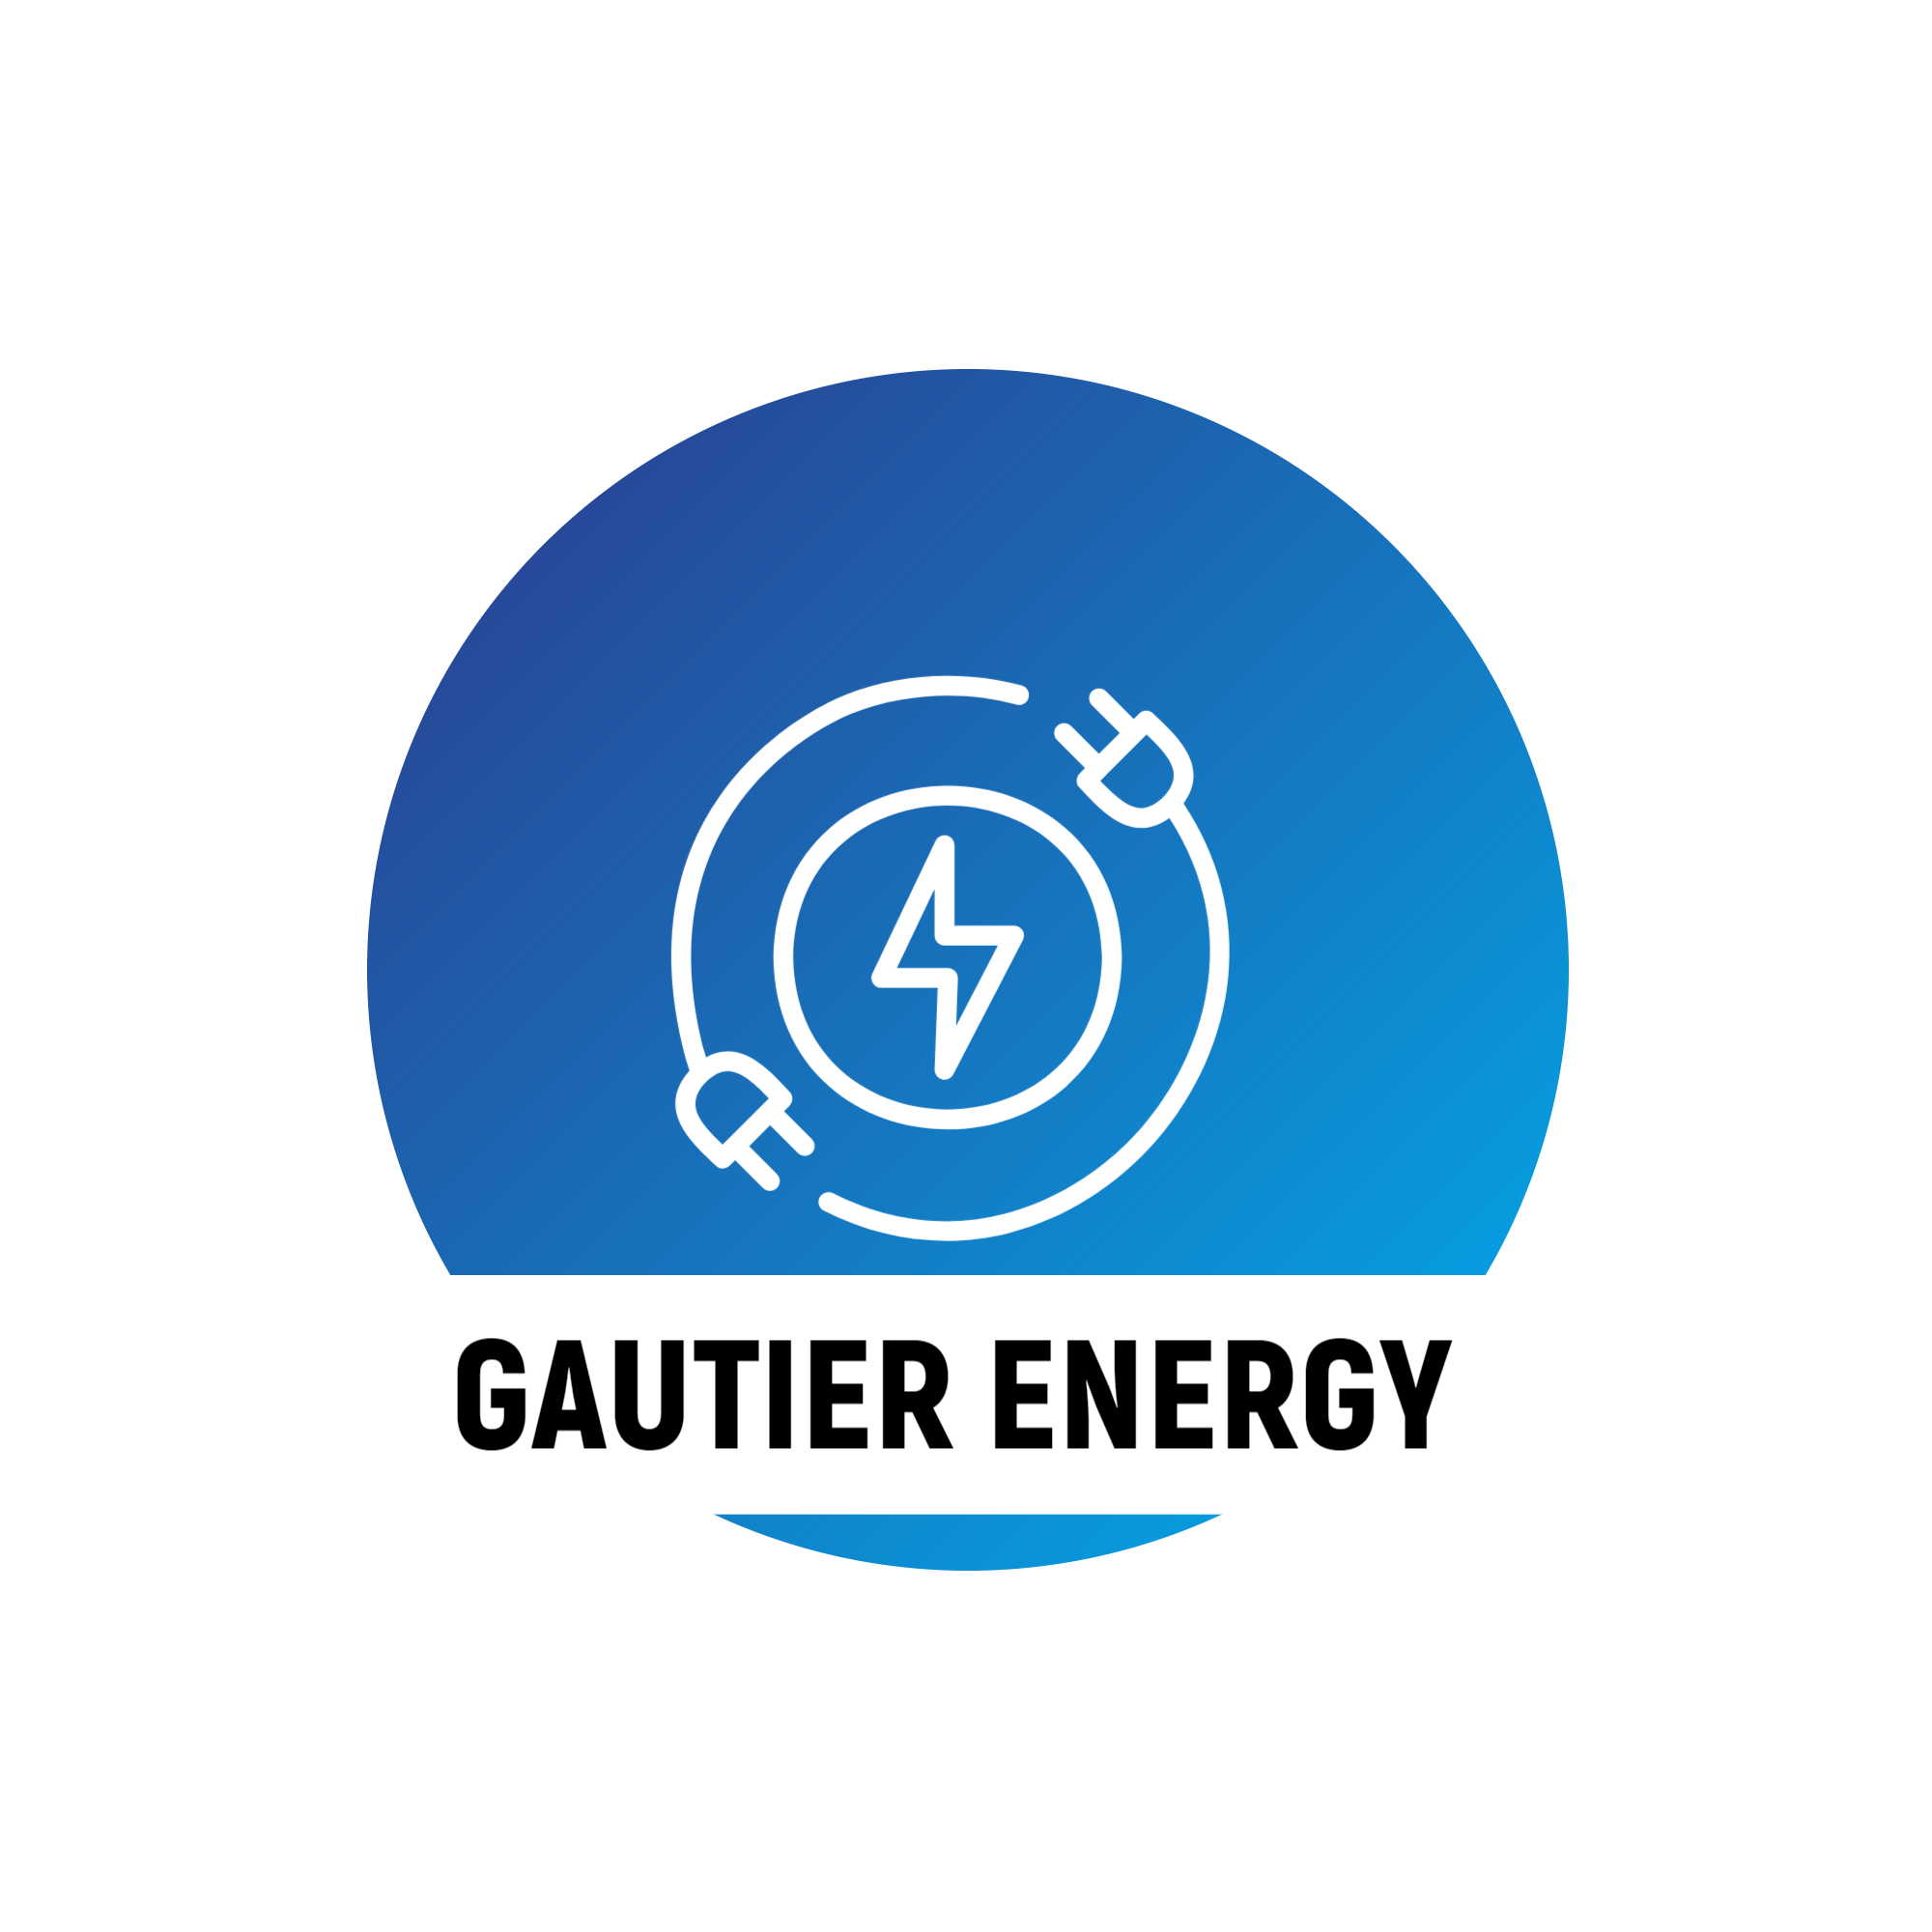 Gautier Energy